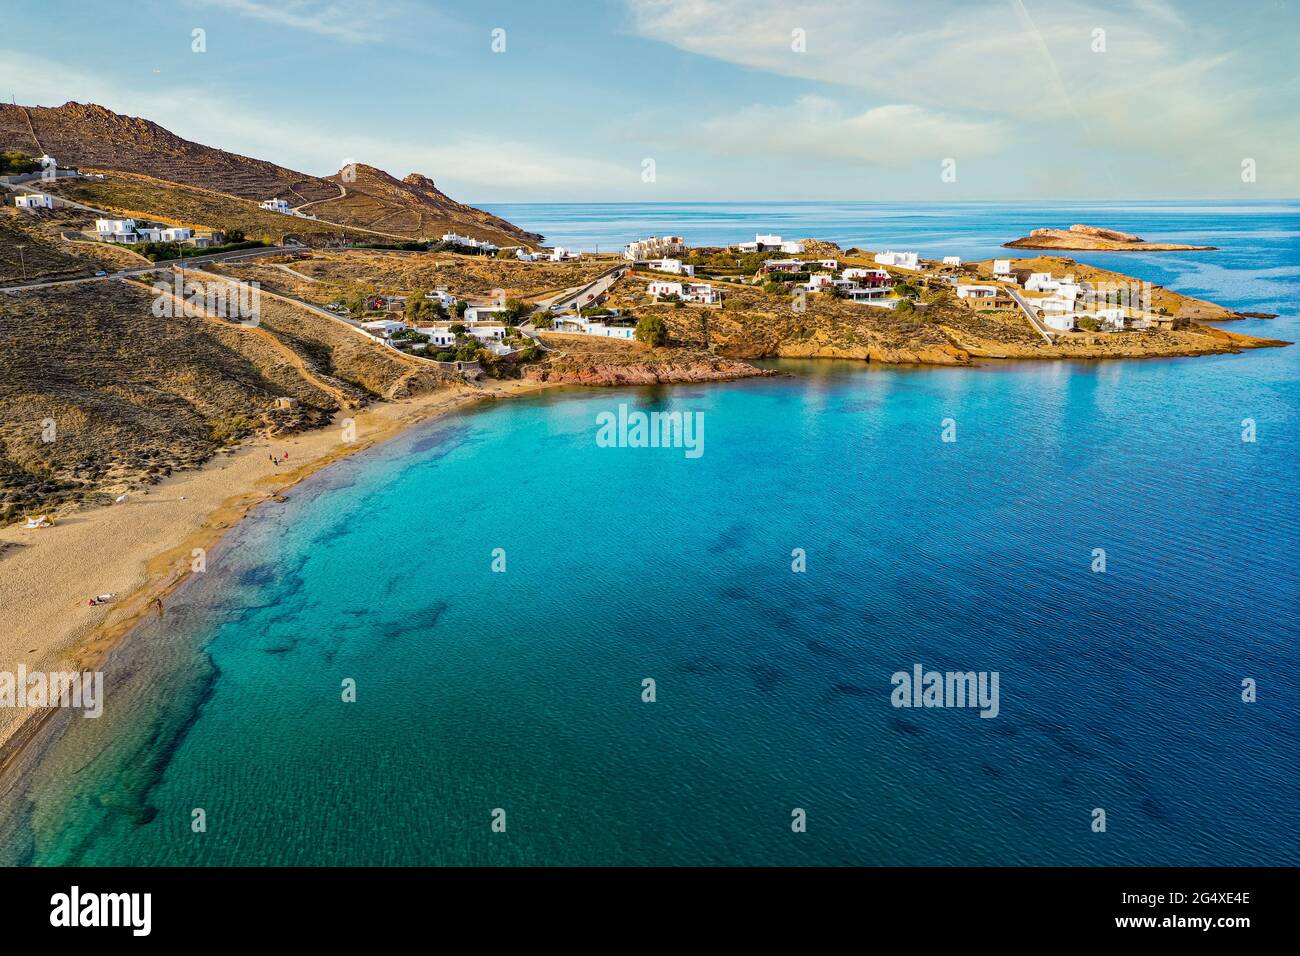 Eau turquoise sur la plage d'Agios Sostis à Mykonos, Grèce Banque D'Images